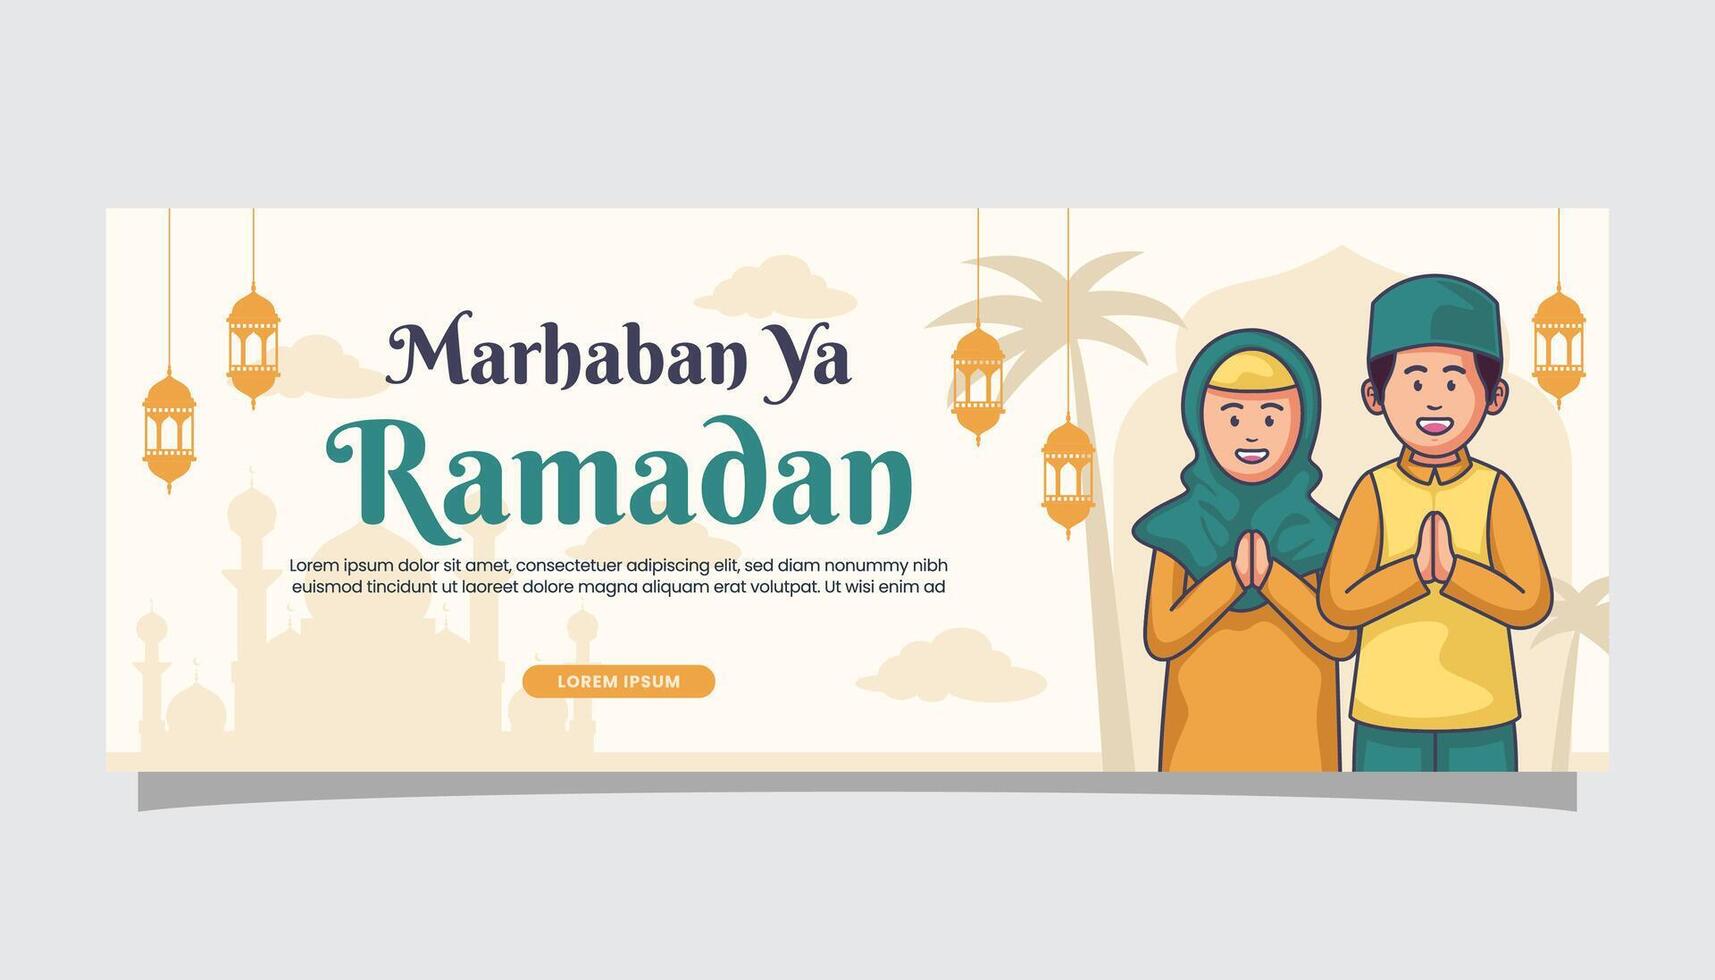 benvenuto Ramadan kareem islamico illustrazione saluti su bandiera copertina pagina vettore